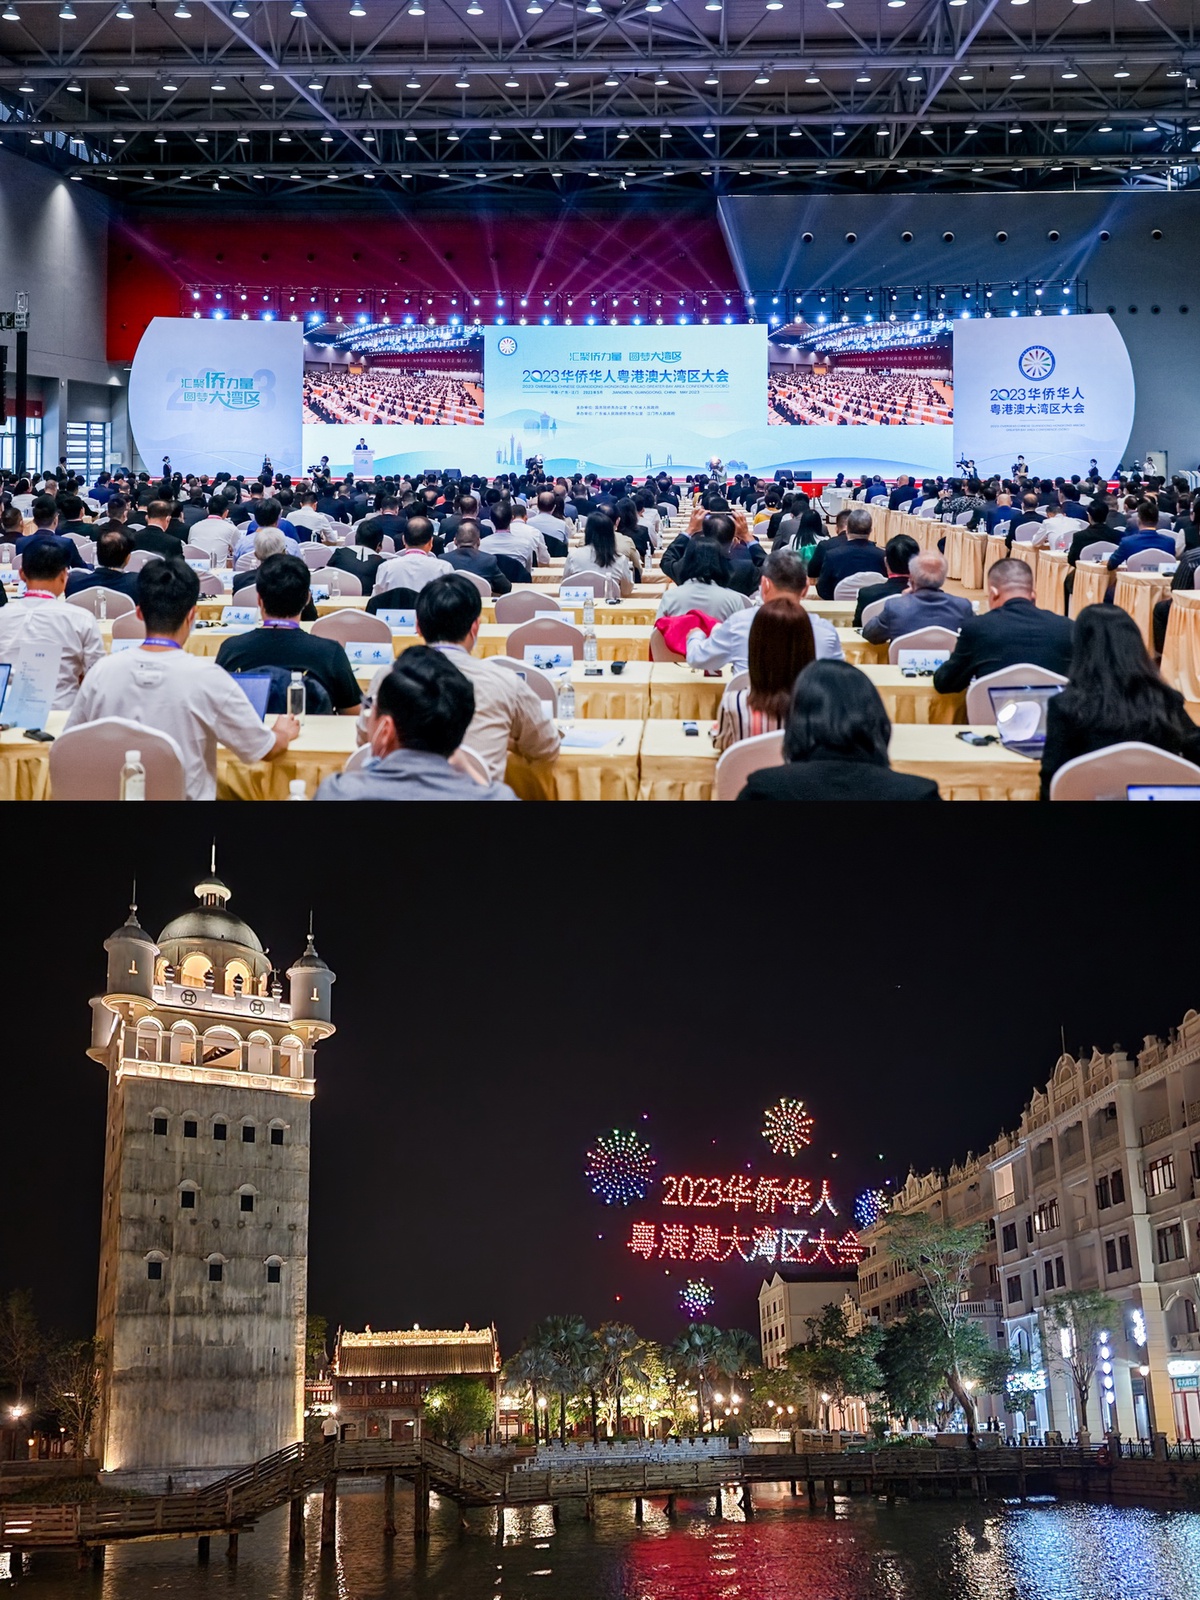 เมืองเจียงเหมินของจีนเป็นเจ้าภาพจัดการประชุมชาวจีนโพ้นทะเลกวางตุ้ง-ฮ่องกง-มาเก๊า ประจำปี 2566